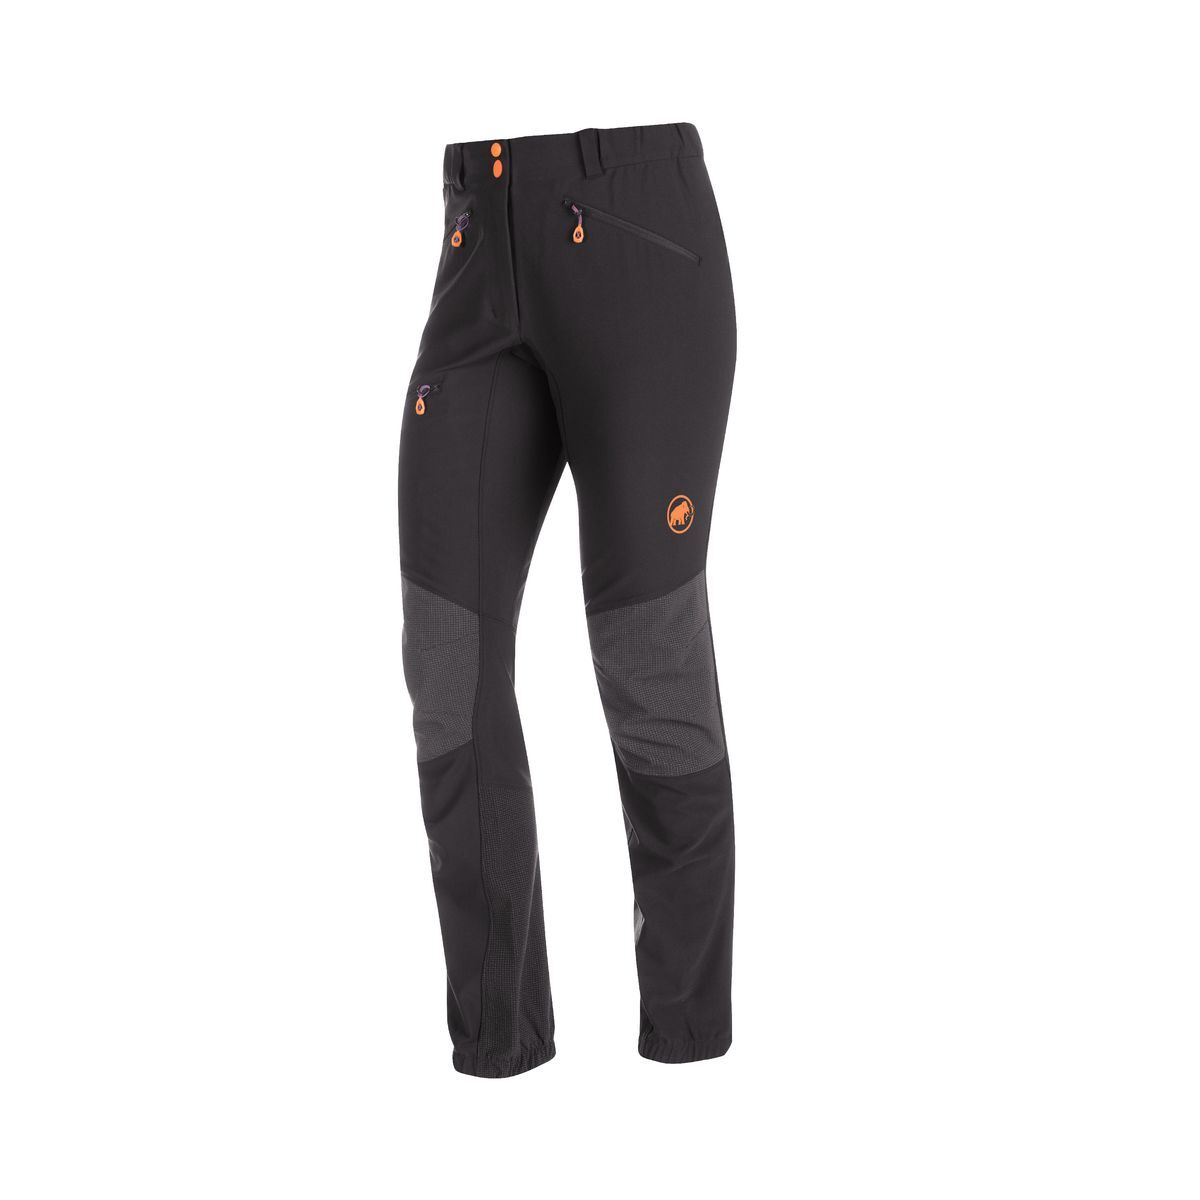 Mammut Eisfeld Advanced SO Pants Women - Mountaineering trousers - Women's